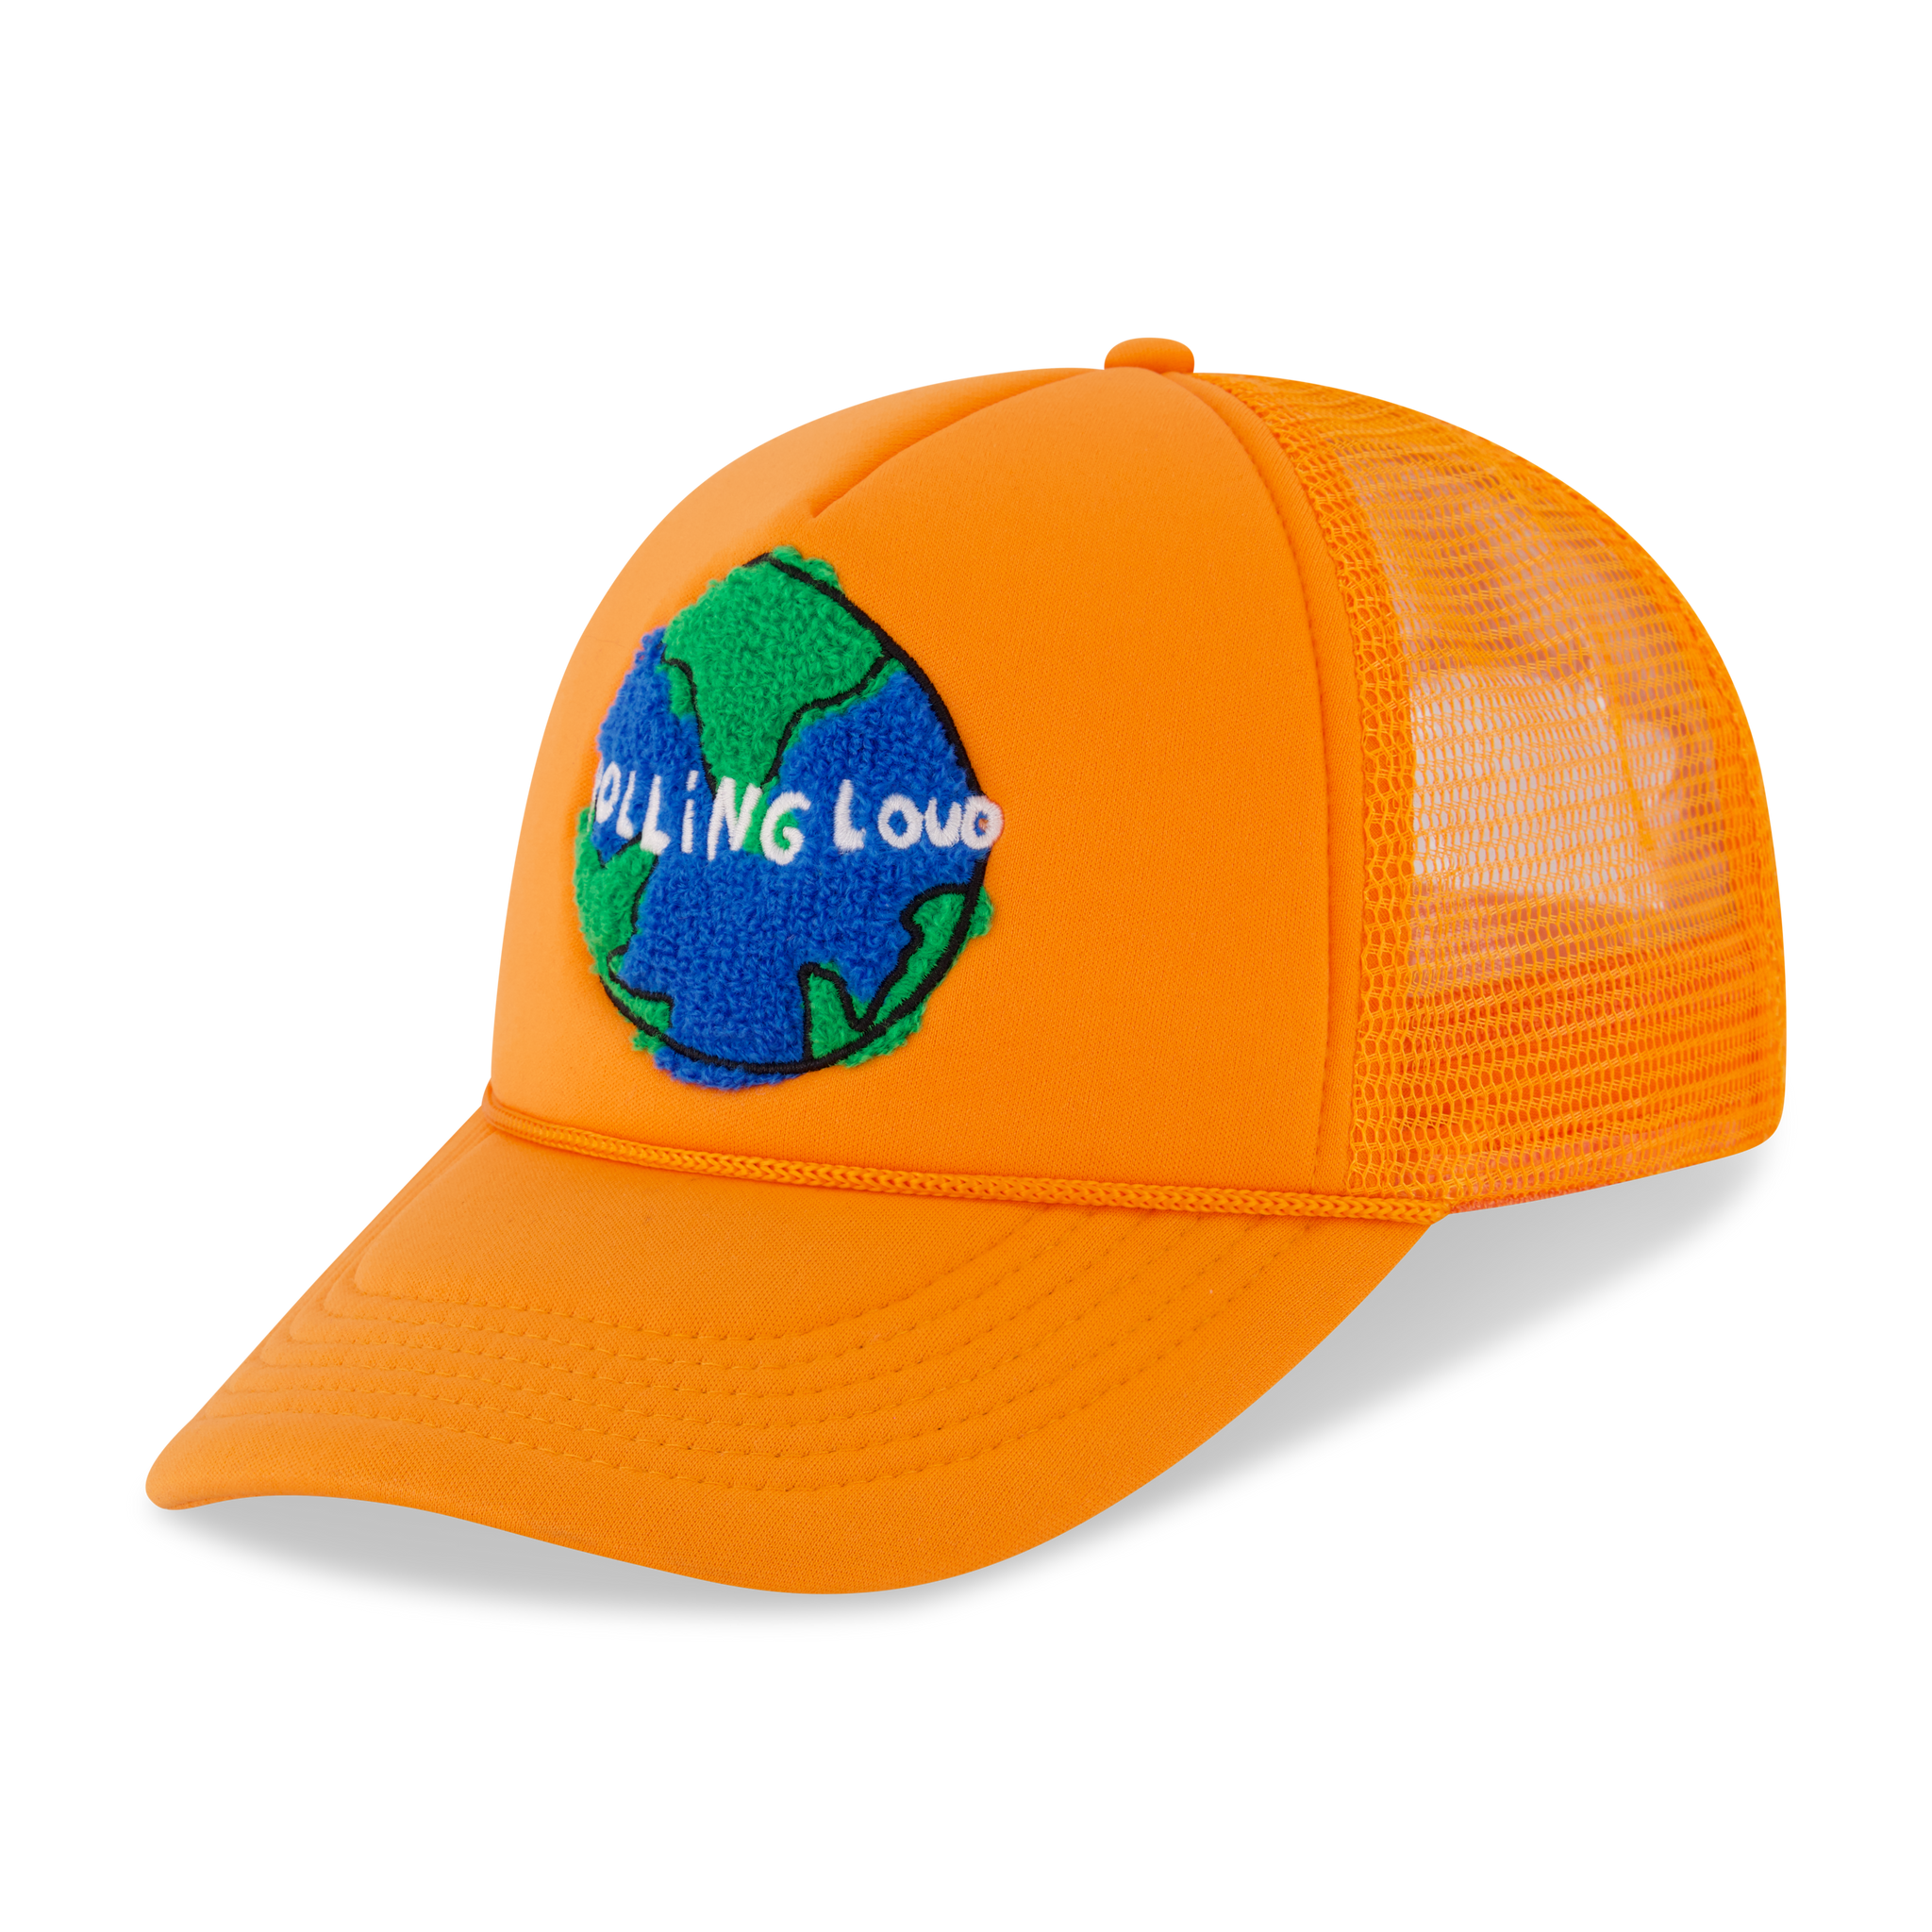 Chenille World Tour Orange Trucker Hat